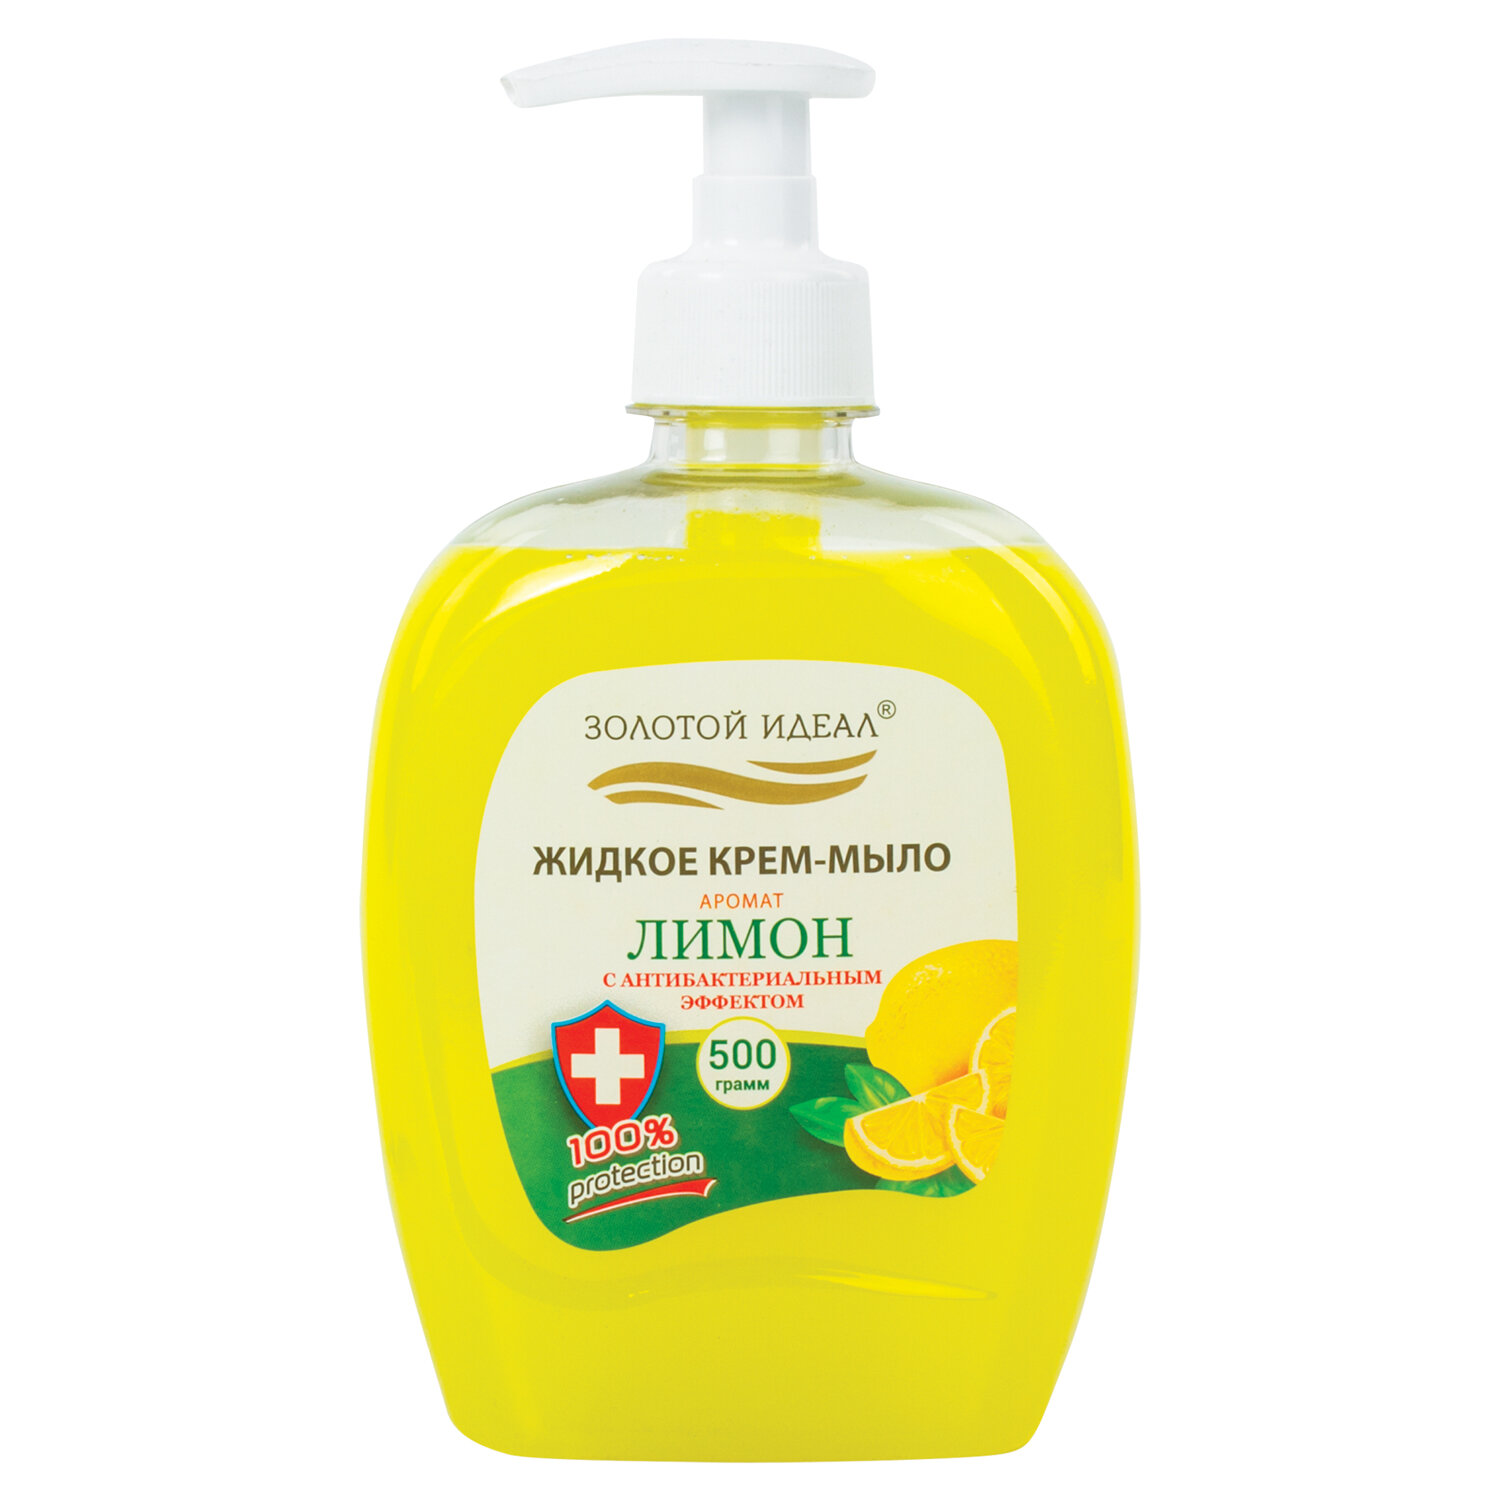 Жидкое крем-мыло Золотой идеал Лимон с антибактериальным эффектом 12 шт х 500 мл мыло жидкое золотой идеал алоэ вера 500 г